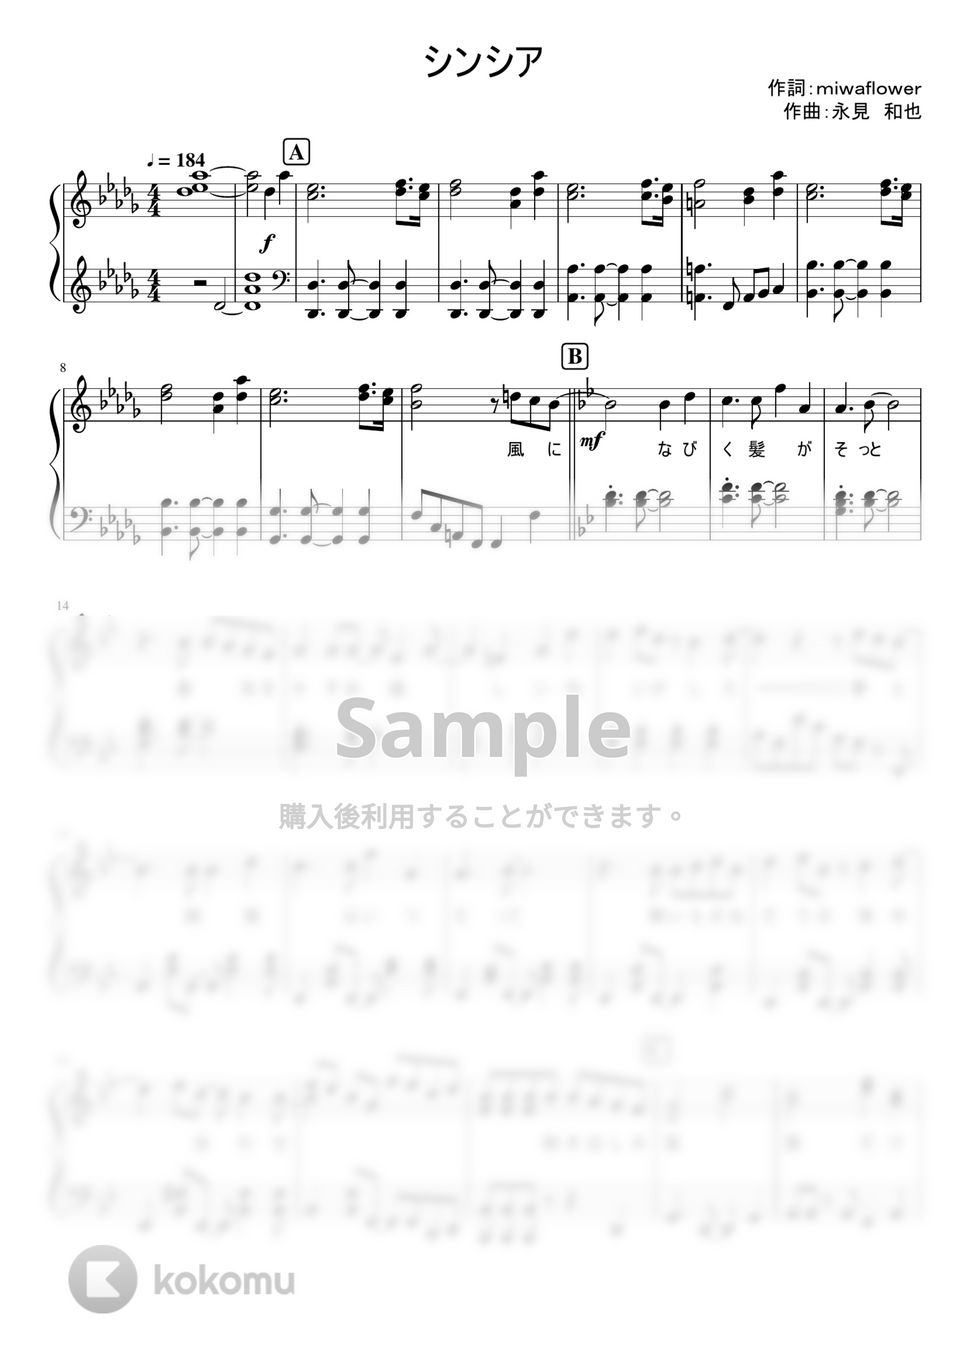 なにわ男子 - シンシア (1stアルバム「1st Love」収録曲。) by ピアノぷりん